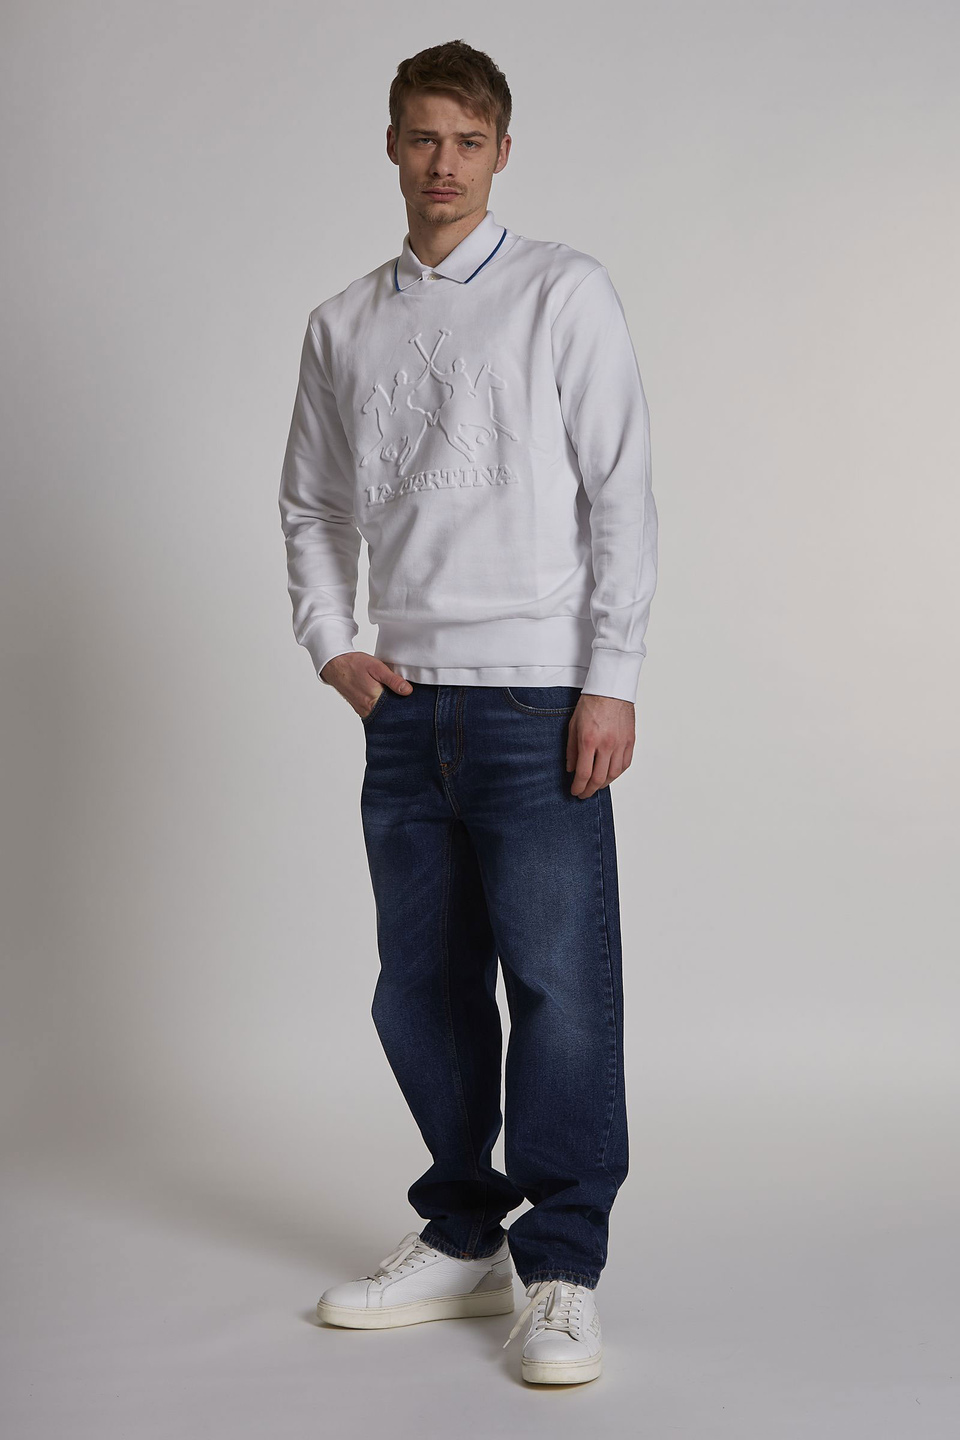 Herren-Poloshirt aus Stretch-Baumwolle mit kurzen Ärmeln im Regular Fit - La Martina - Official Online Shop